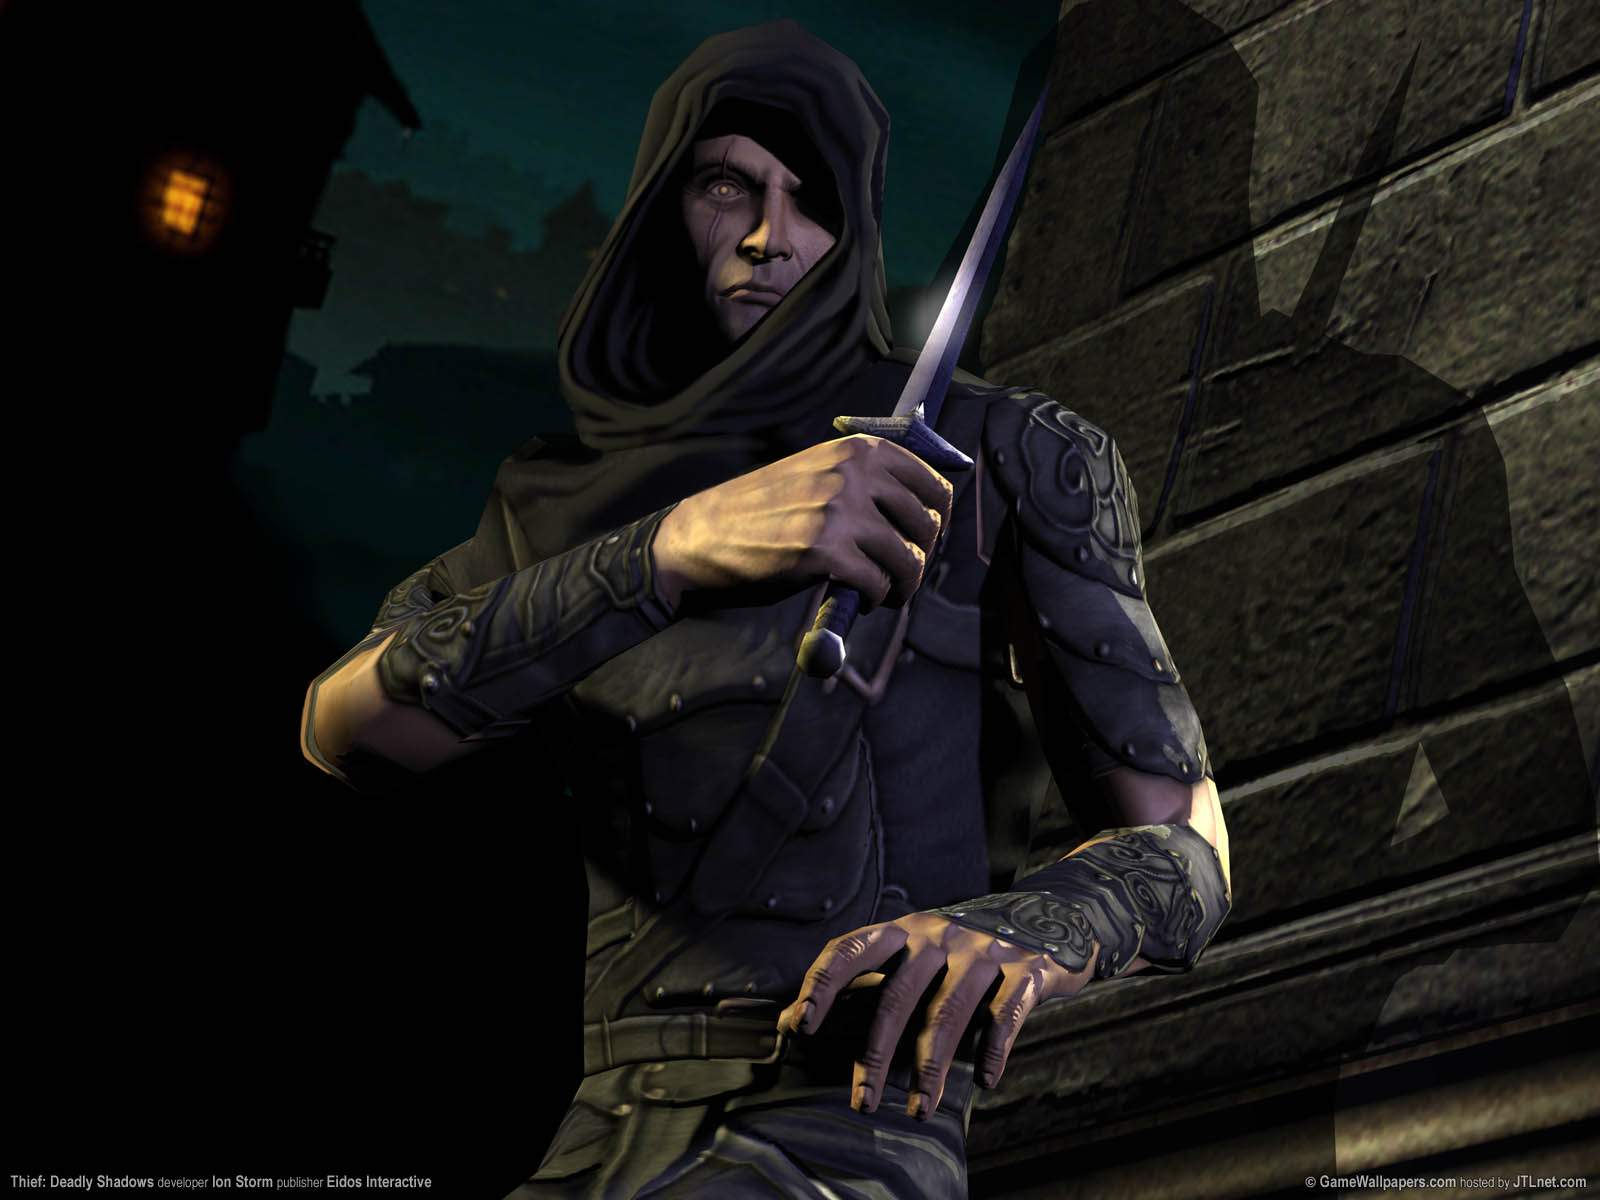 Thief: Deadly Shadows fond d'cran 02 1600x1200